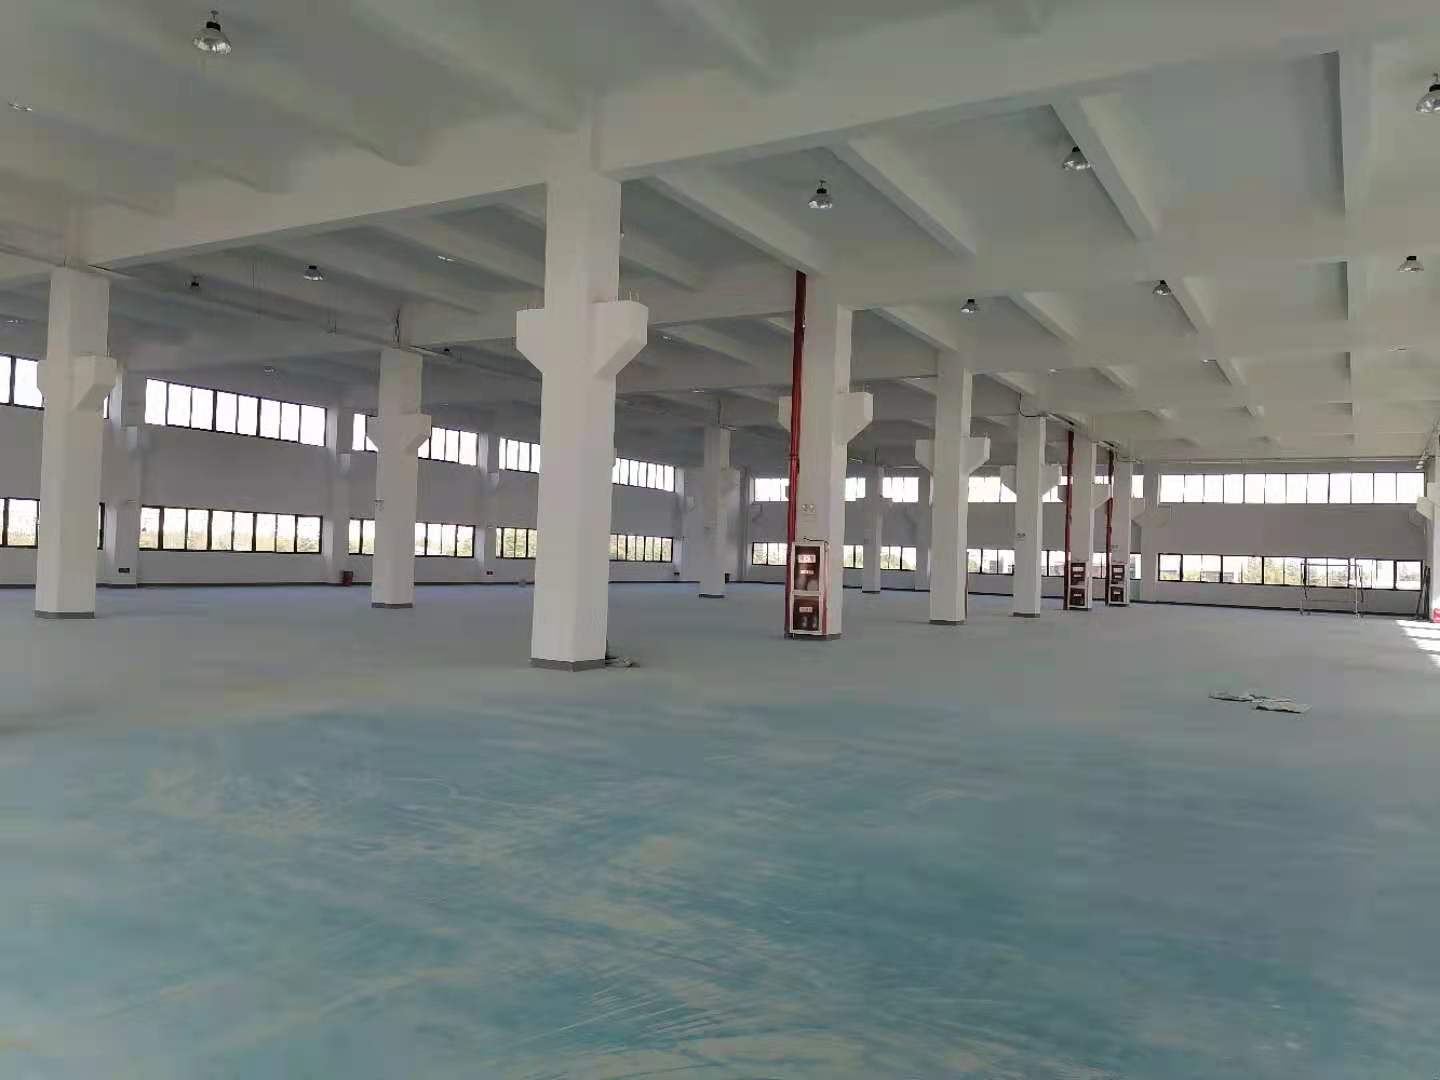 出租昆山城北3层厂房1万平米 最小分租1500平米